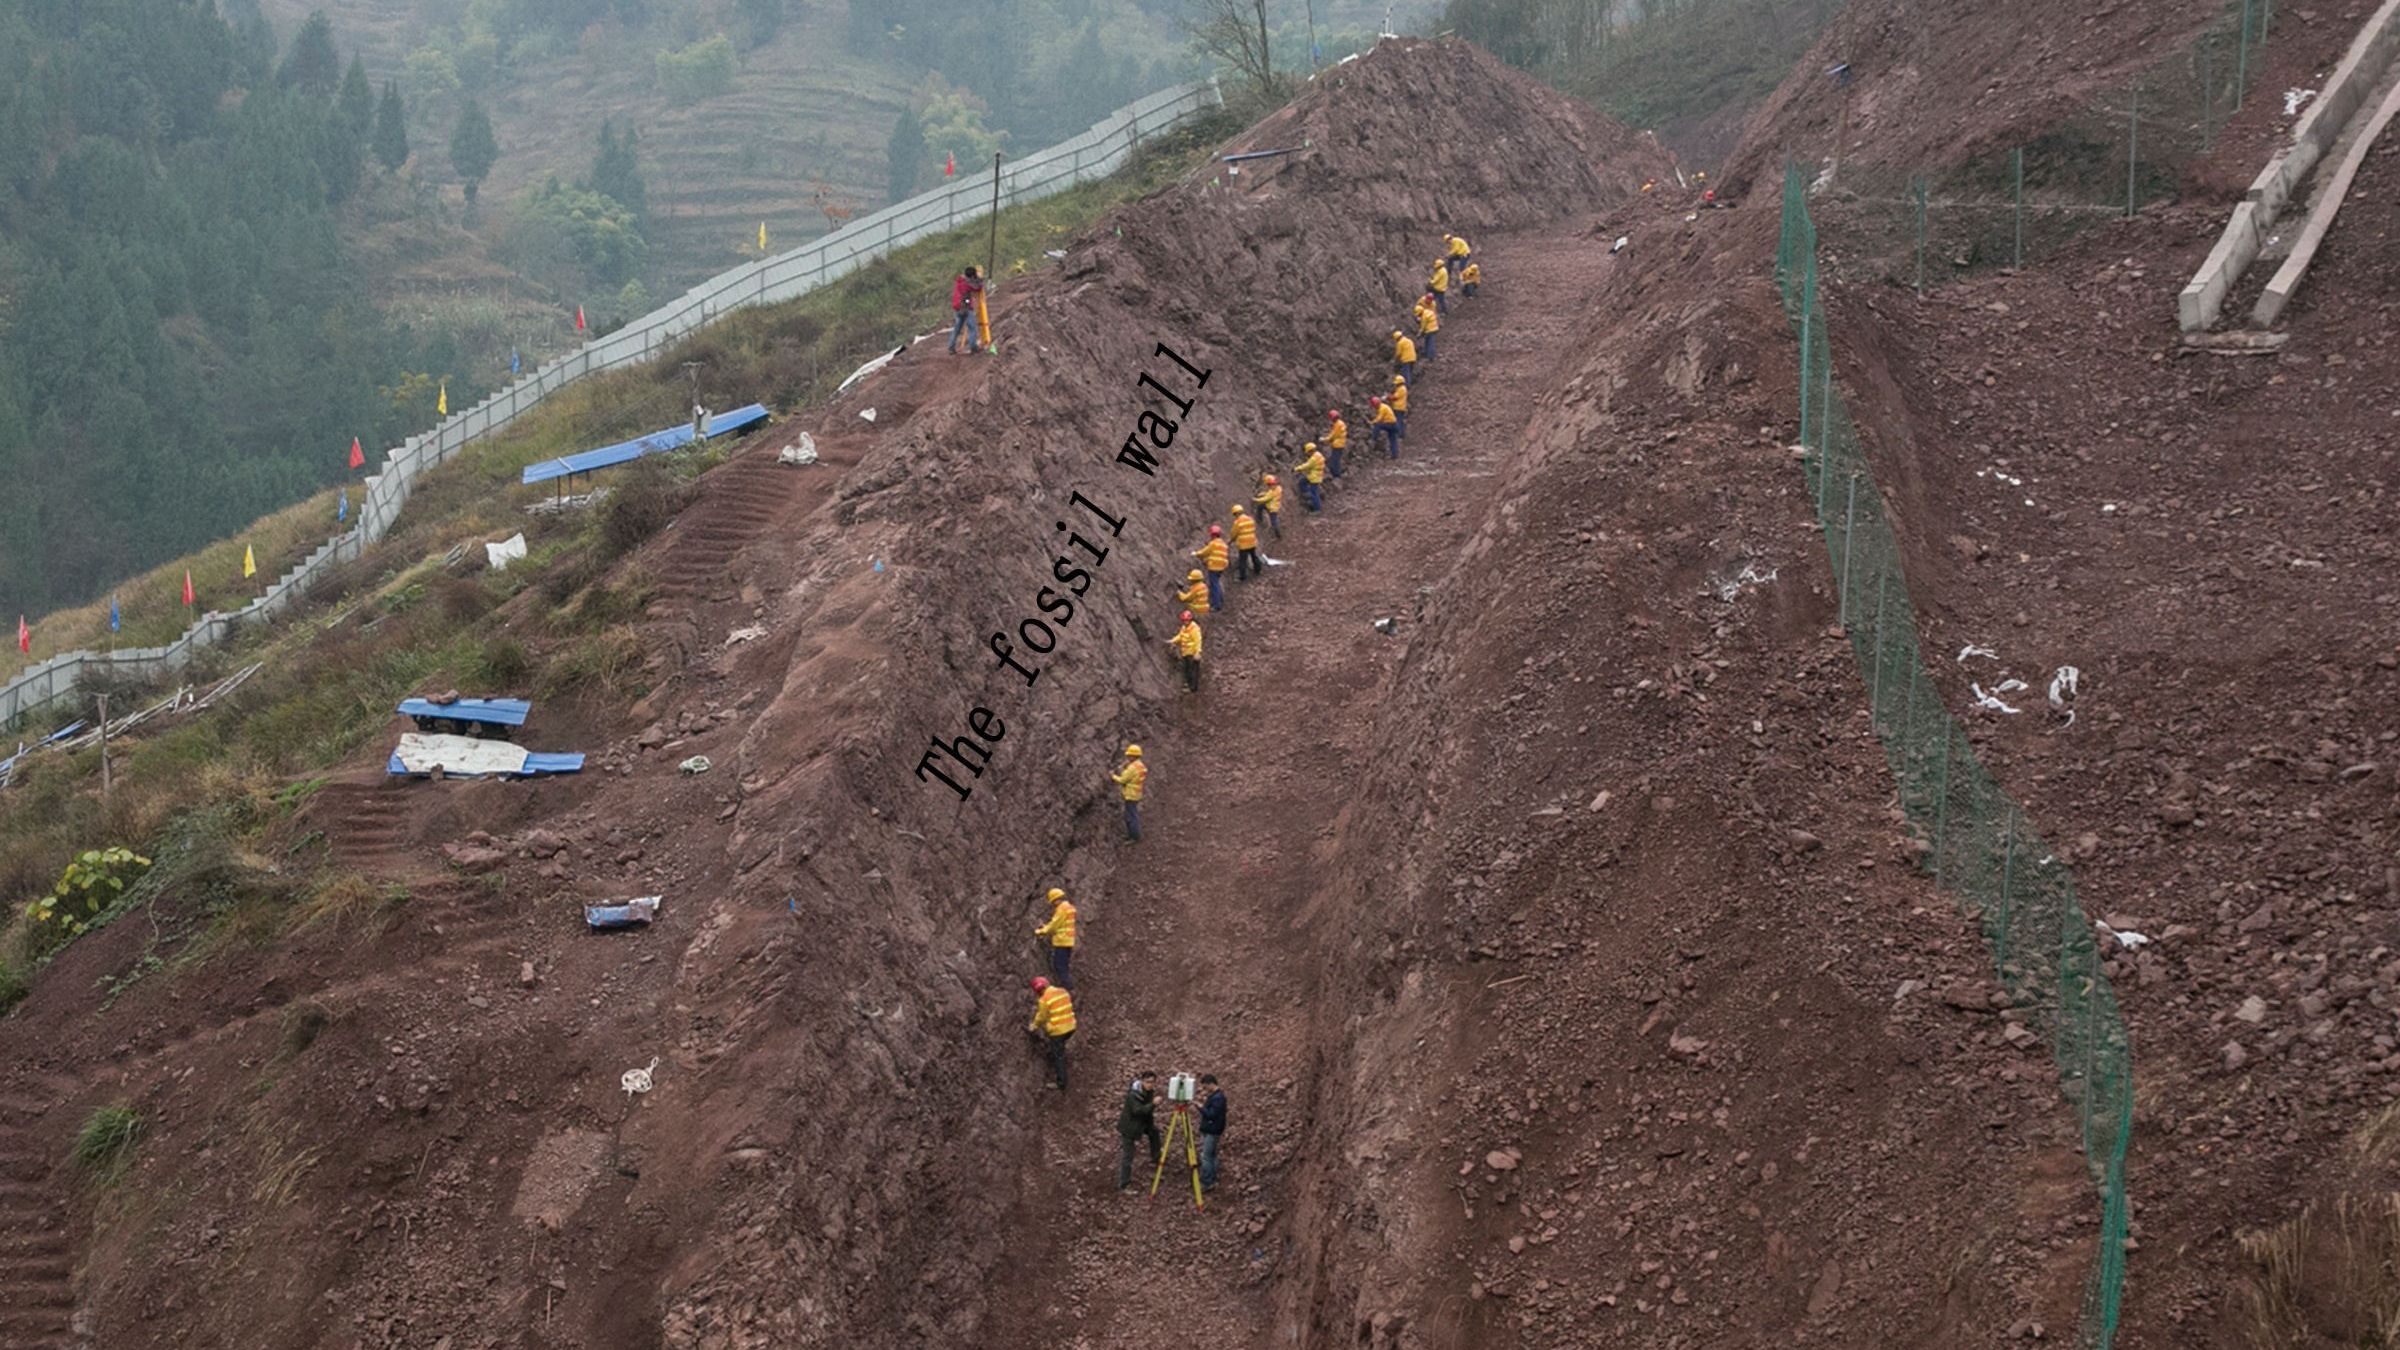 Ein Teil der fossilen Wand, die Paläontologen im Dorf Laojun, China, ausgegraben haben.